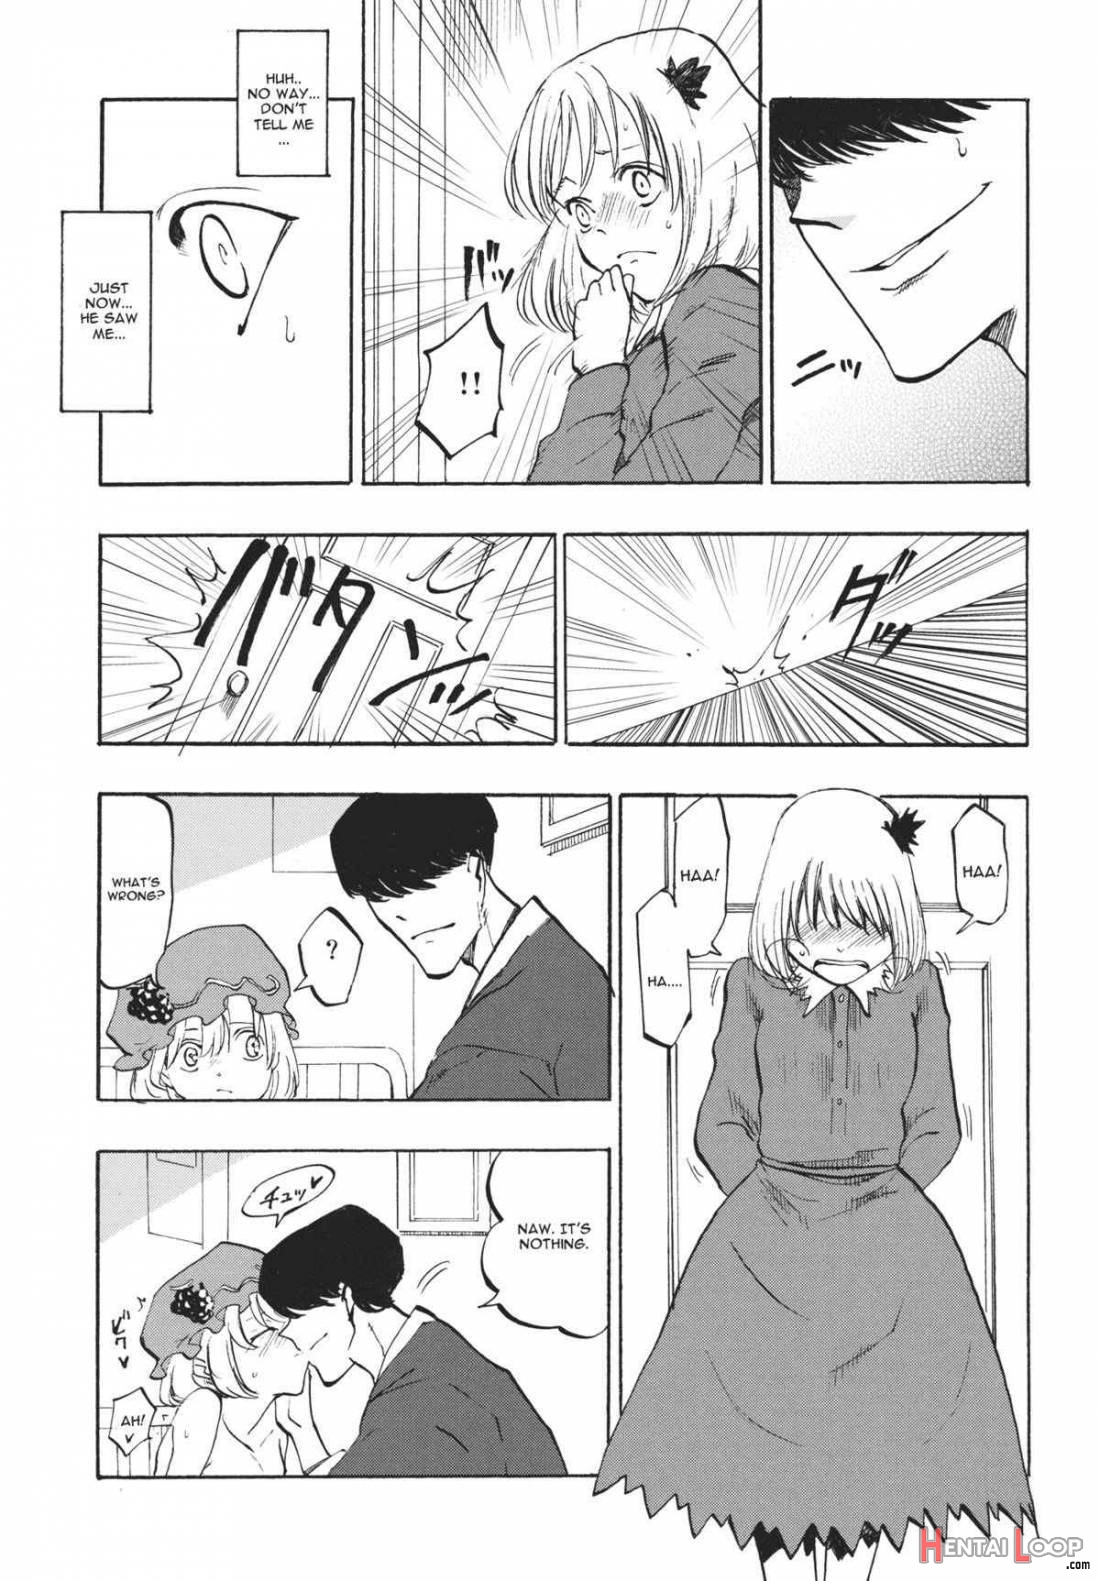 Ochiba no Yukue page 4